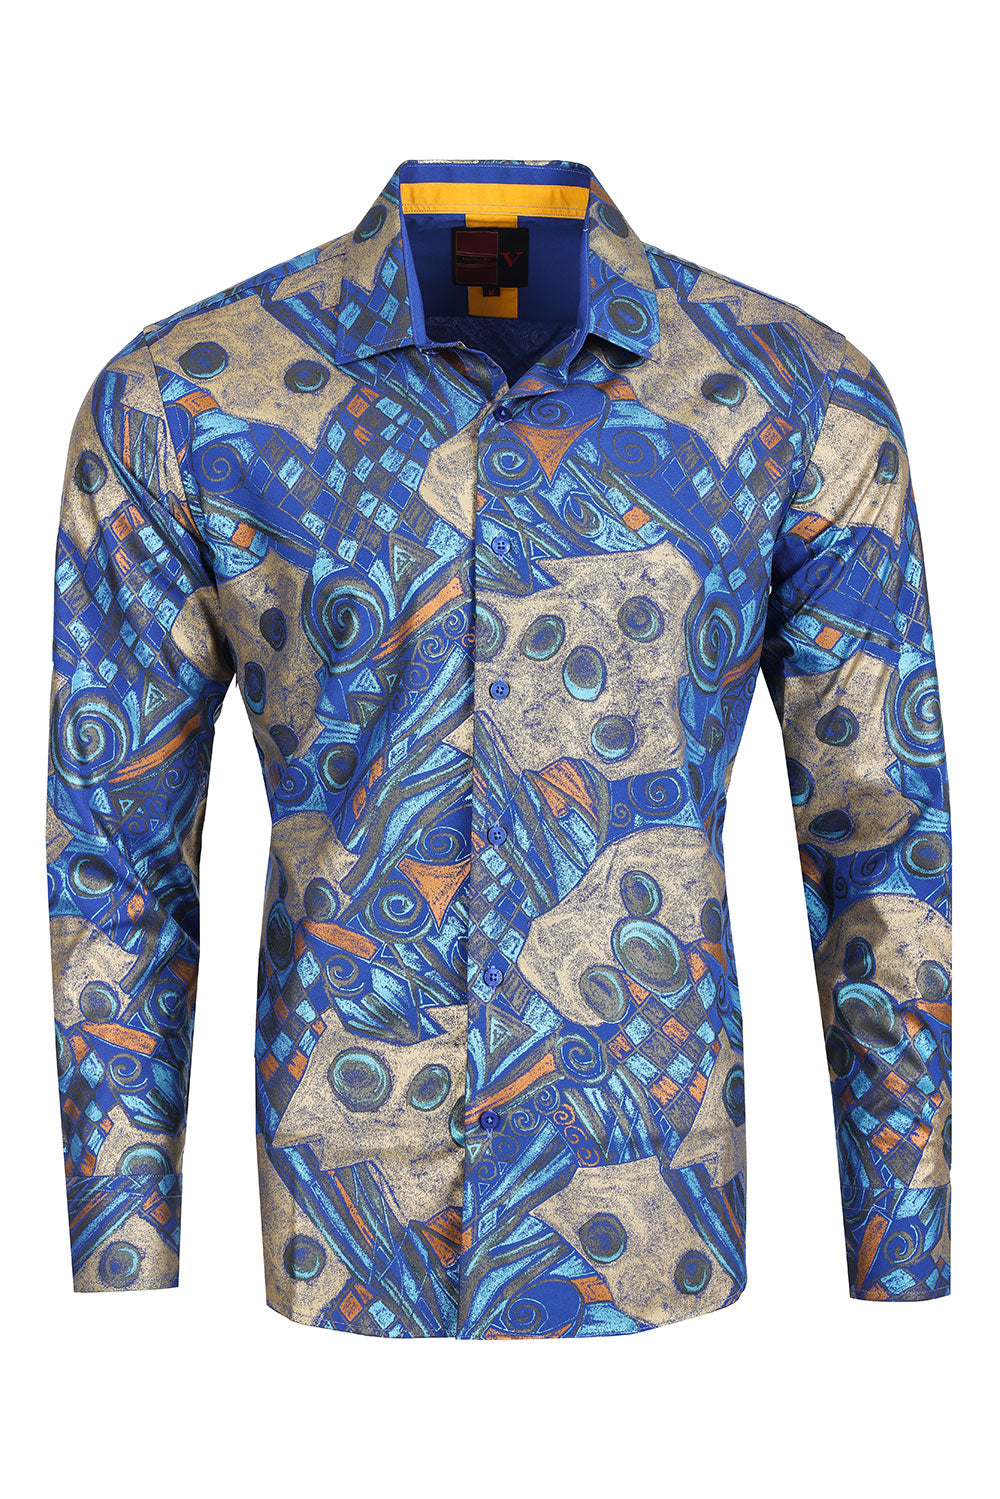 Barabas Men's Abstract Print Design Long Sleeves Shirts 2VS166